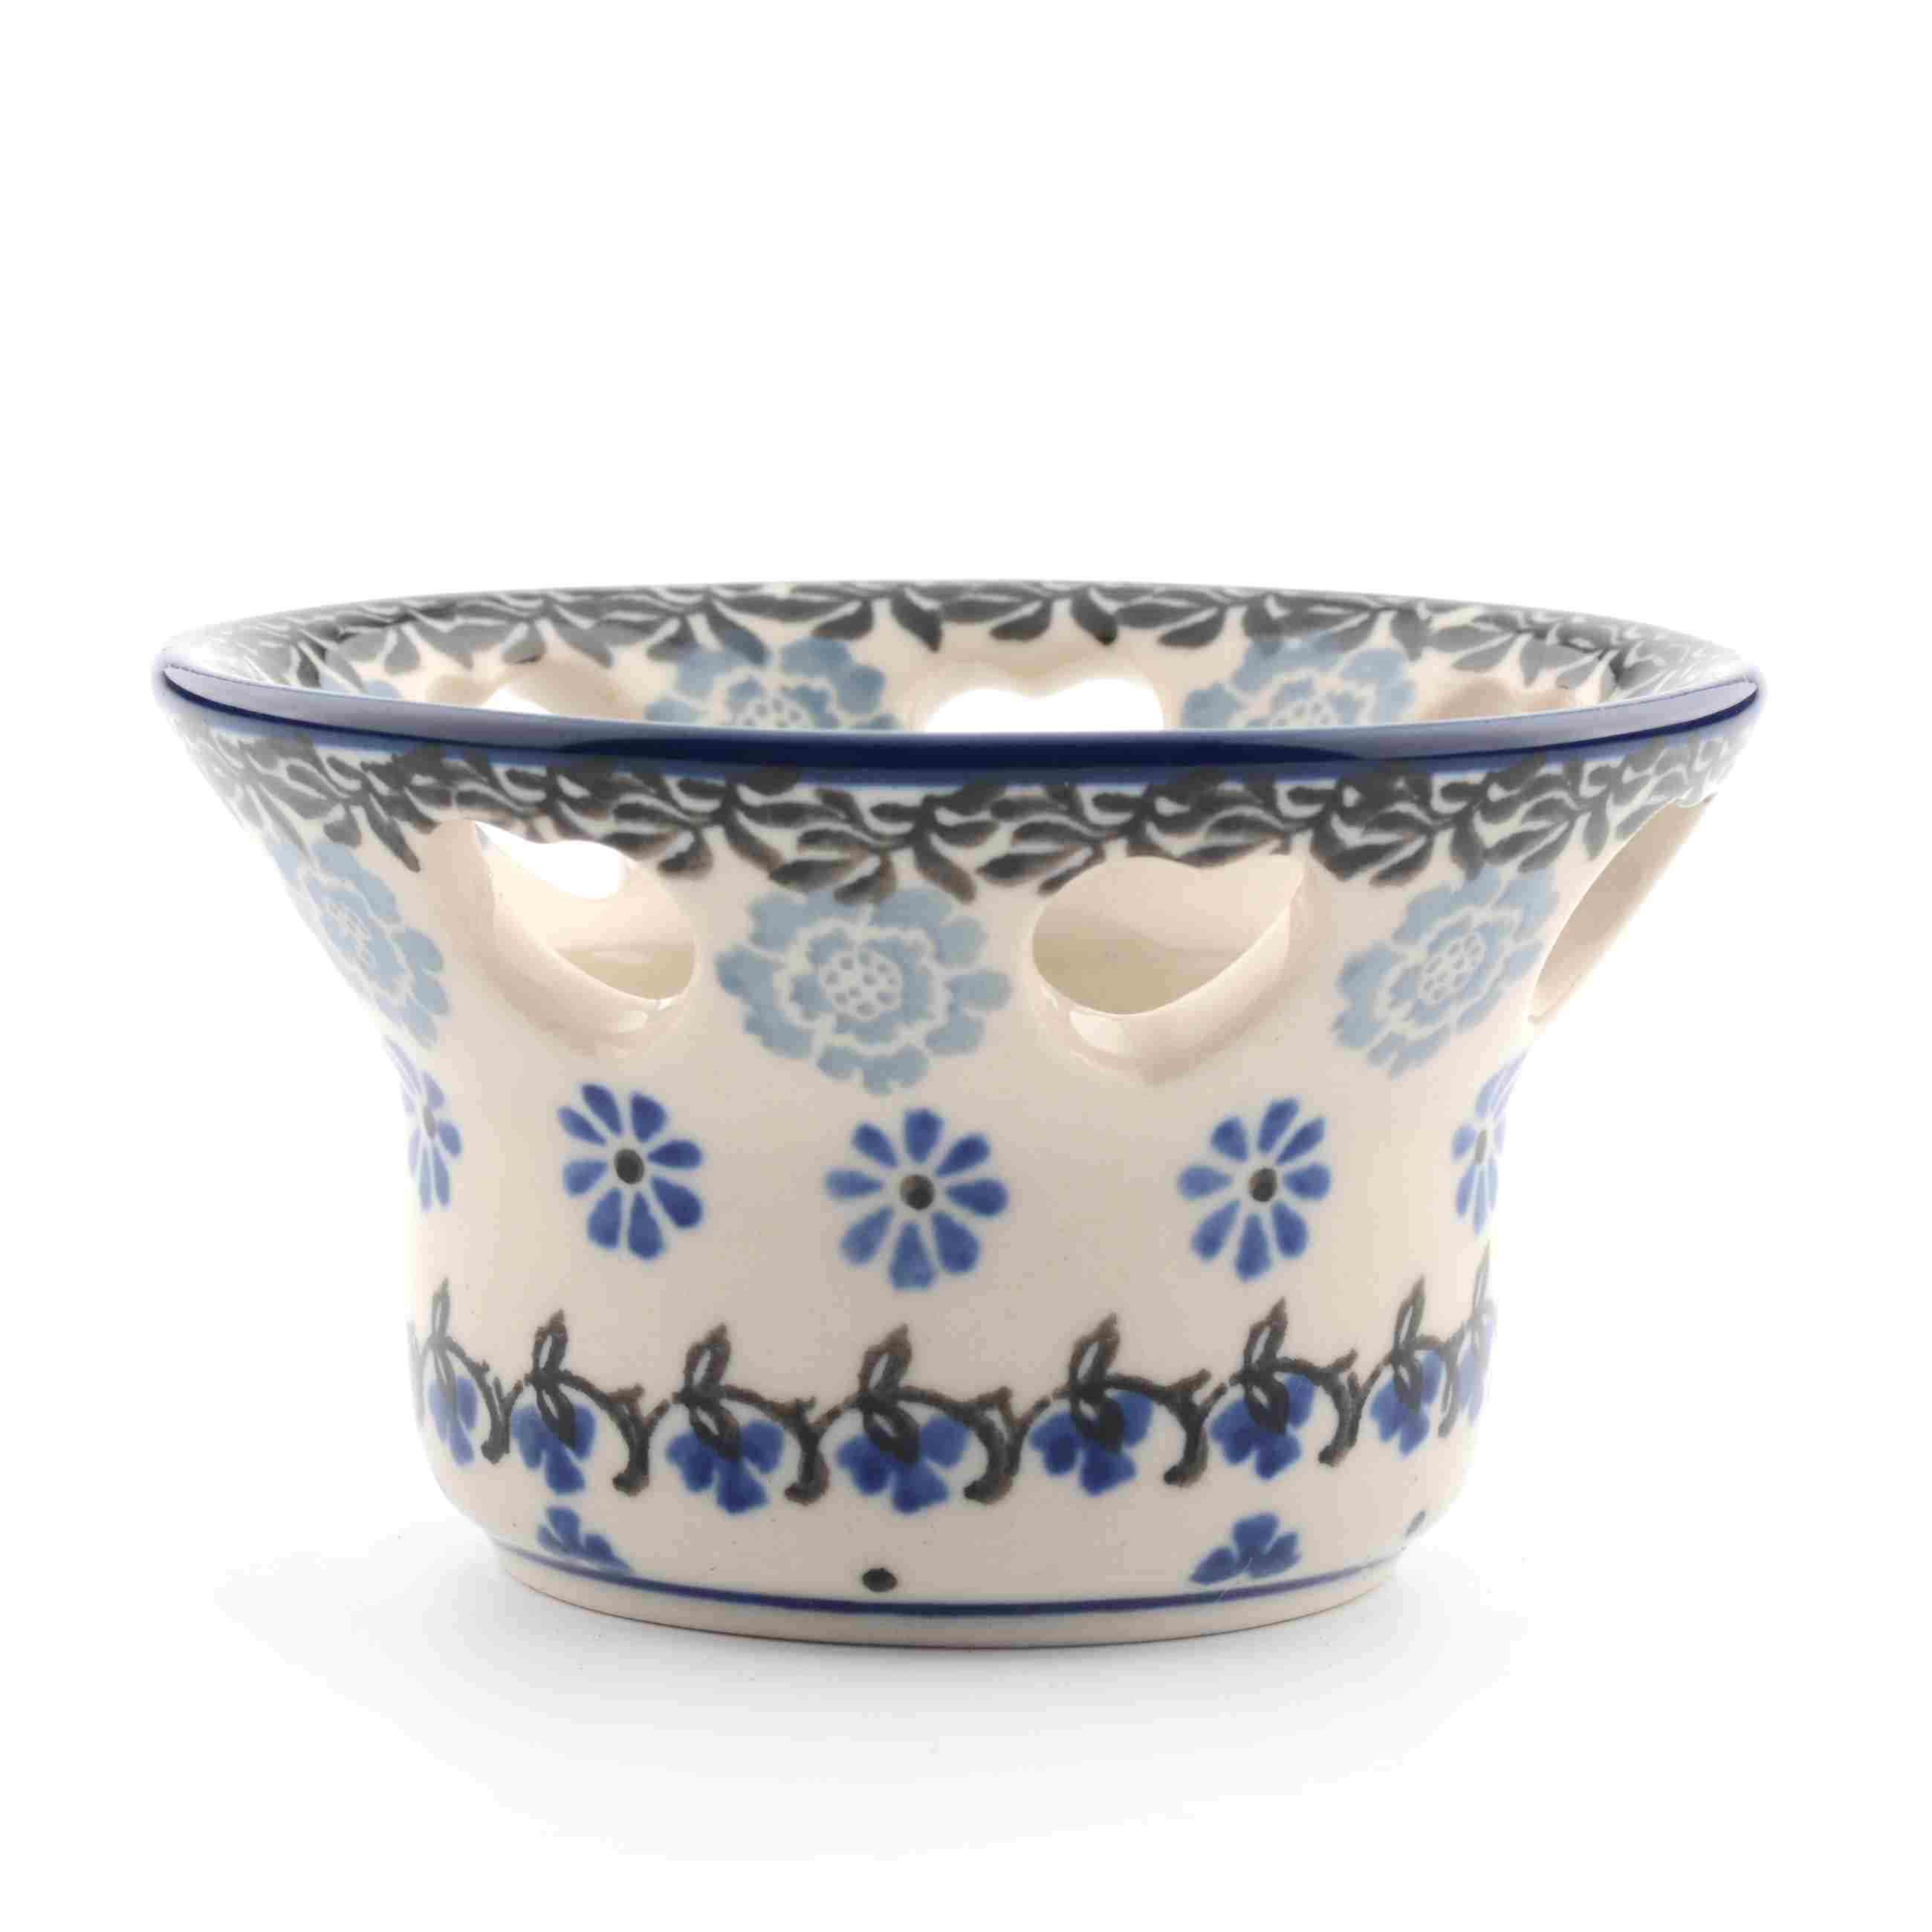 Bunzlau Castle Keramik Teelichthalter herzförmige Löcher - Belle Fleur